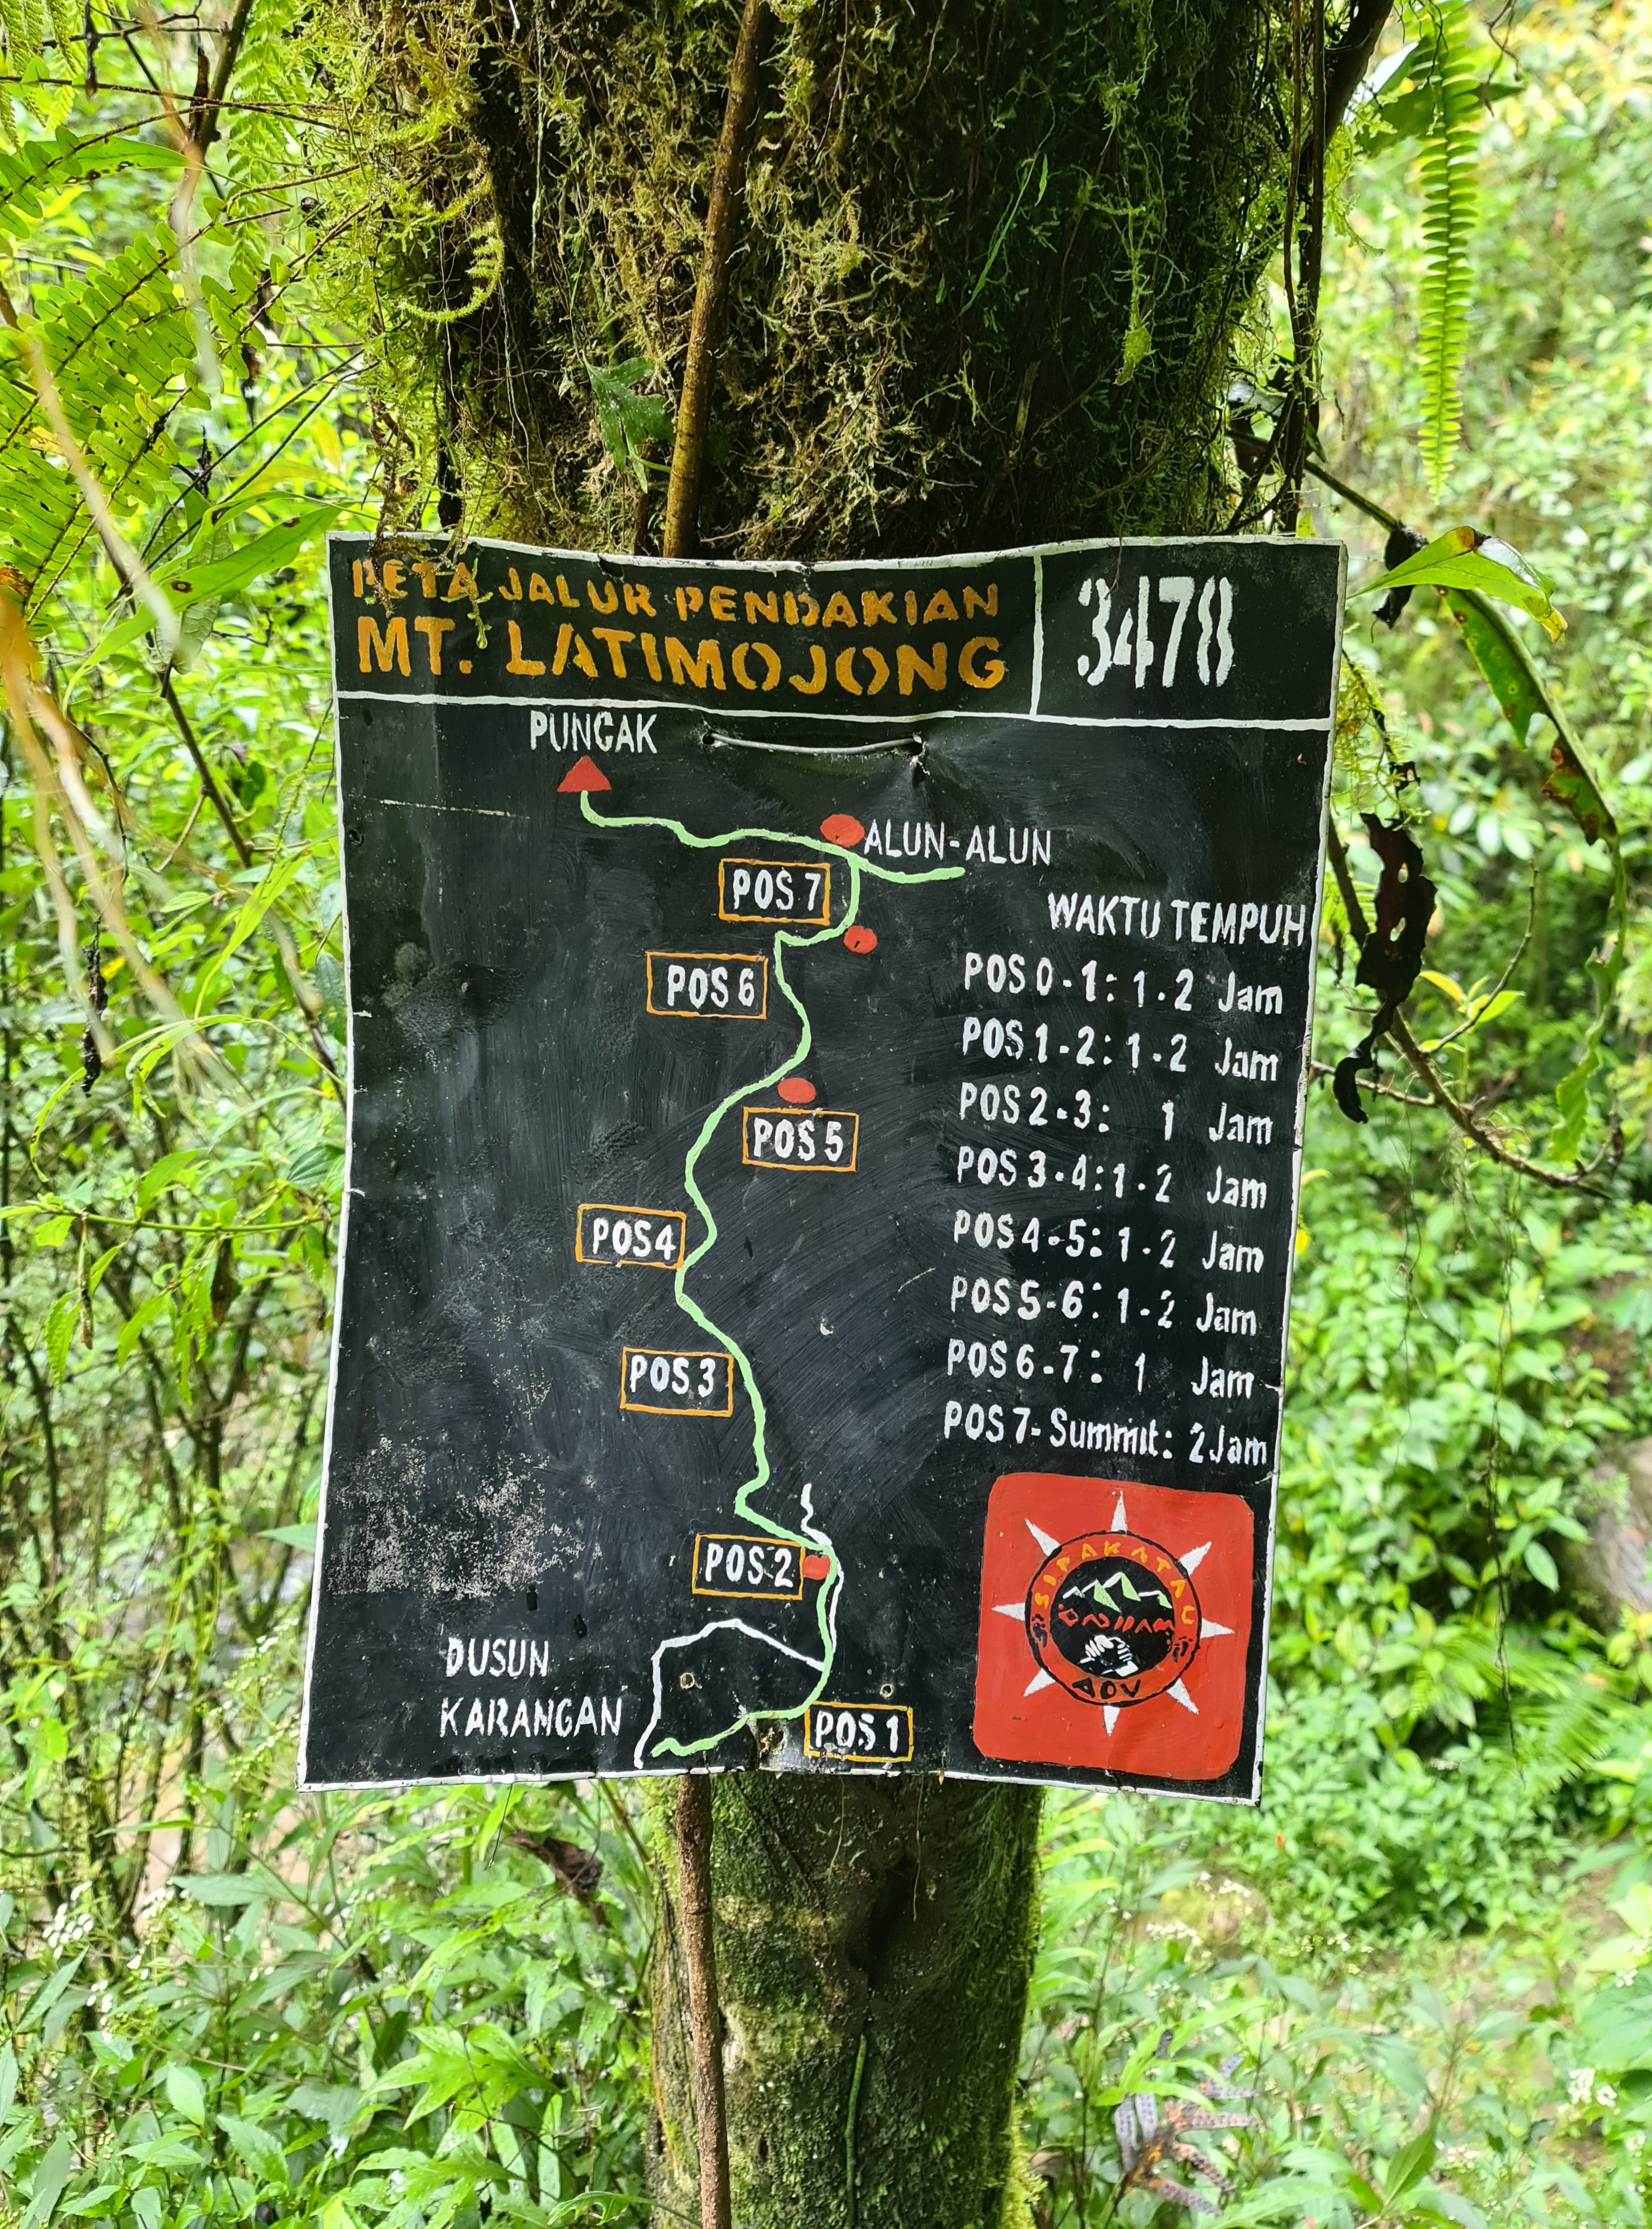 Latimojong 14/50 - Beginilah jalur pendakian yang akan kita lalui, ada 7 pos dengan jarak tempuh antar setiap posnya sekitar 1 hingga 2 jam.